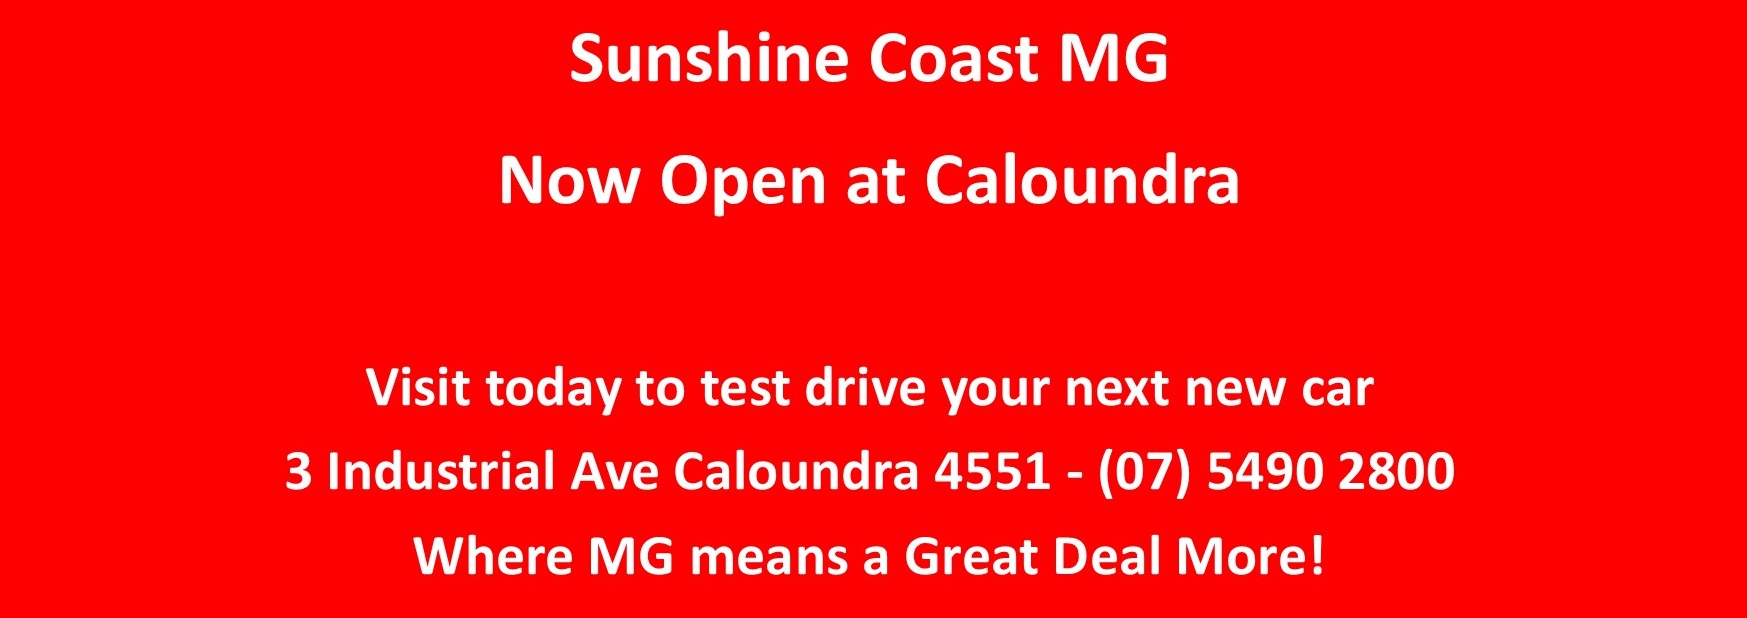 Caloundra Opening MG